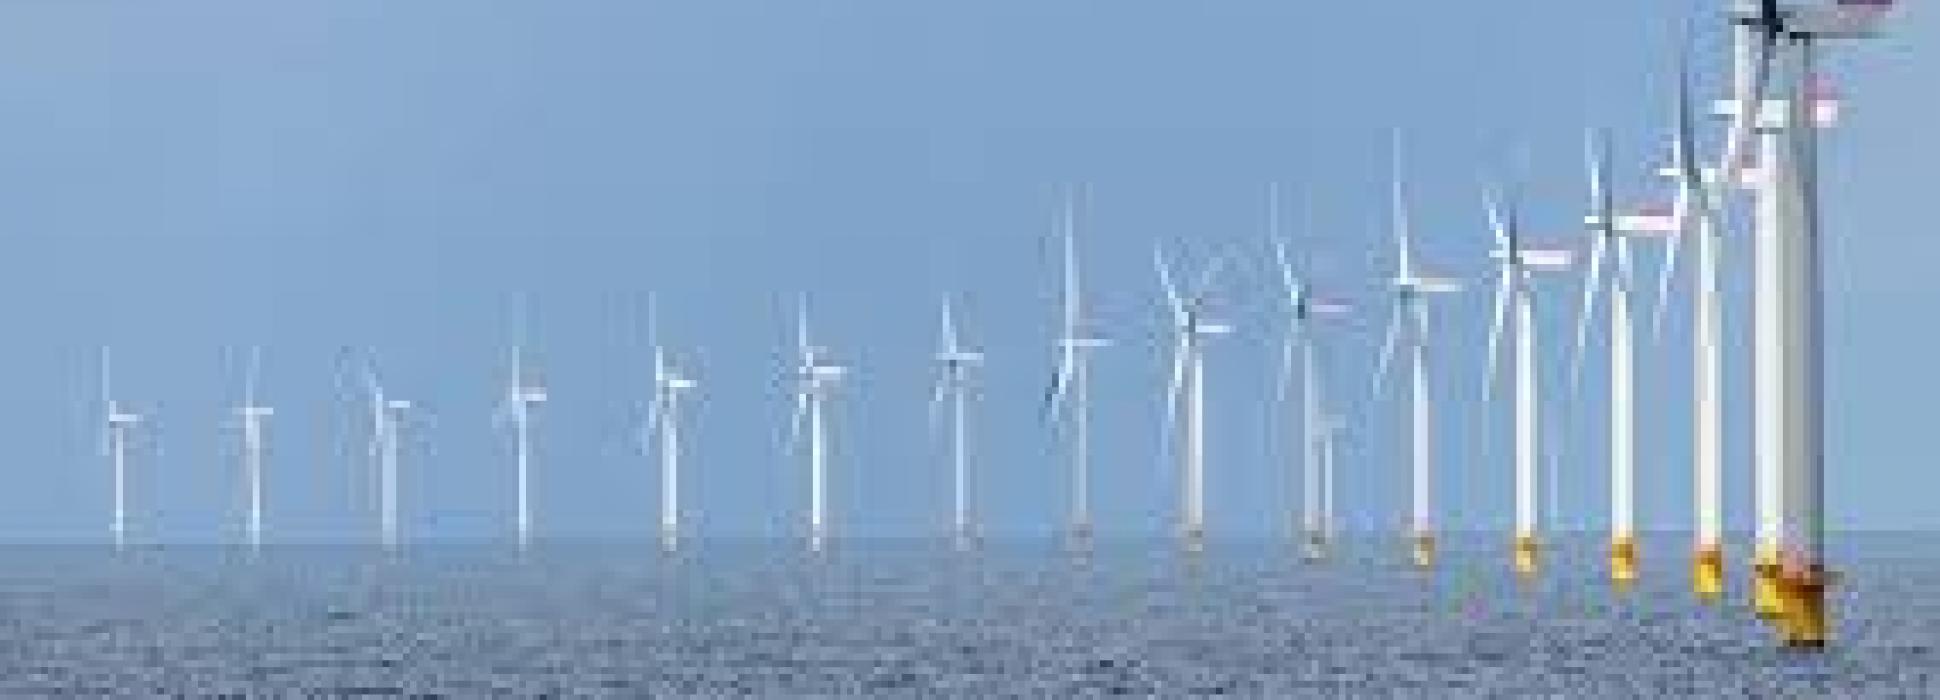 Representantes de seis puertos eólicos líderes afrontan juntos el reto de la energía eólica en Europa